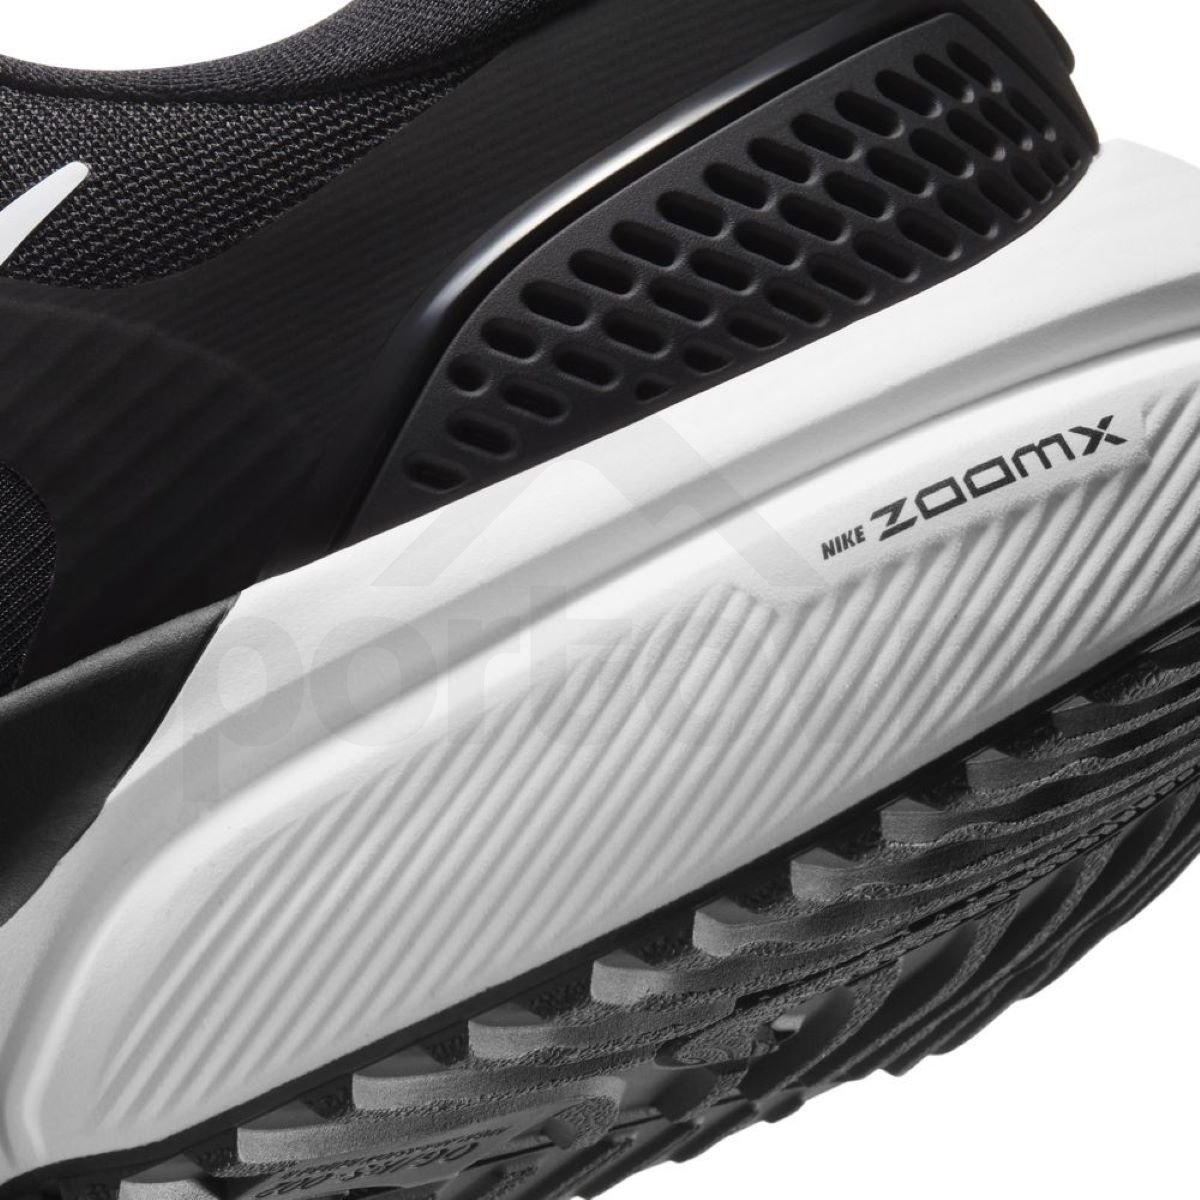 Obuv Nike Air Zoom Vomero 15 M - černá/bílá